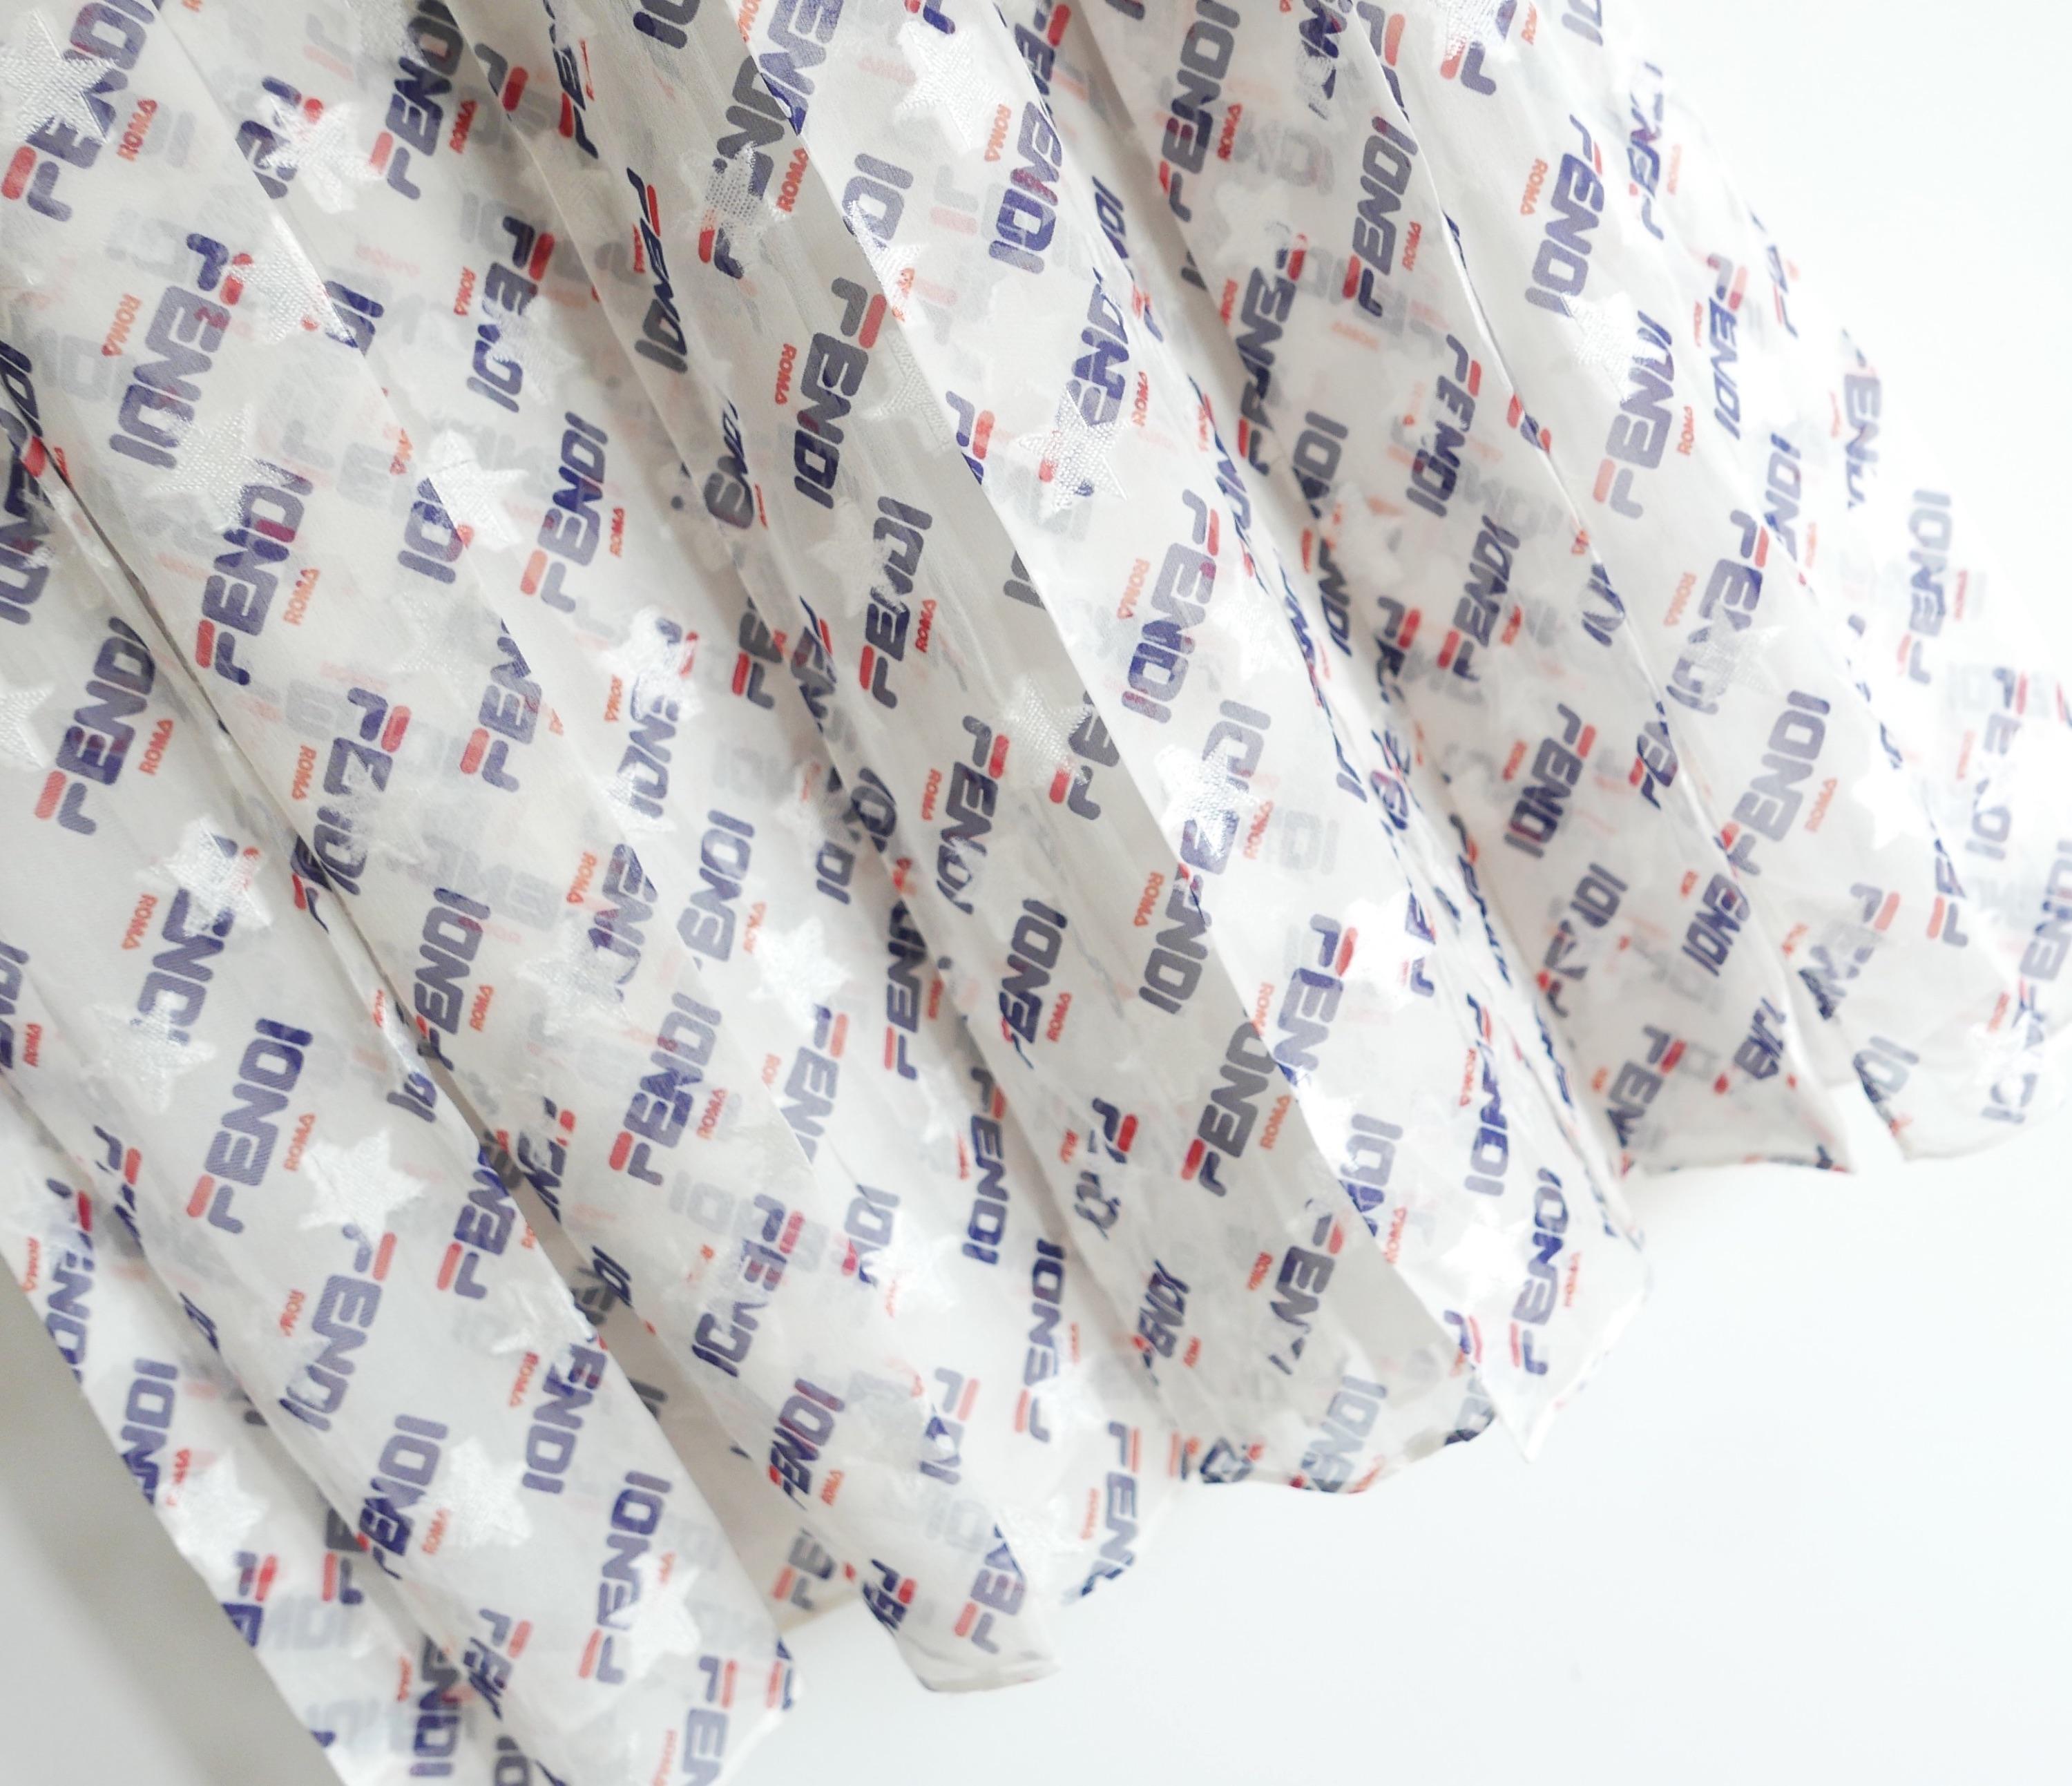 Fabuleuse jupe plissée à logo en édition limitée Fendi x Fila, issue de la collection capsule Fendimania 2018, achetée 1 450 € et non portée. Confectionnée en mousseline de soie mélangée jacquard étoilé et douce, elle arbore le logo Fendi dans le